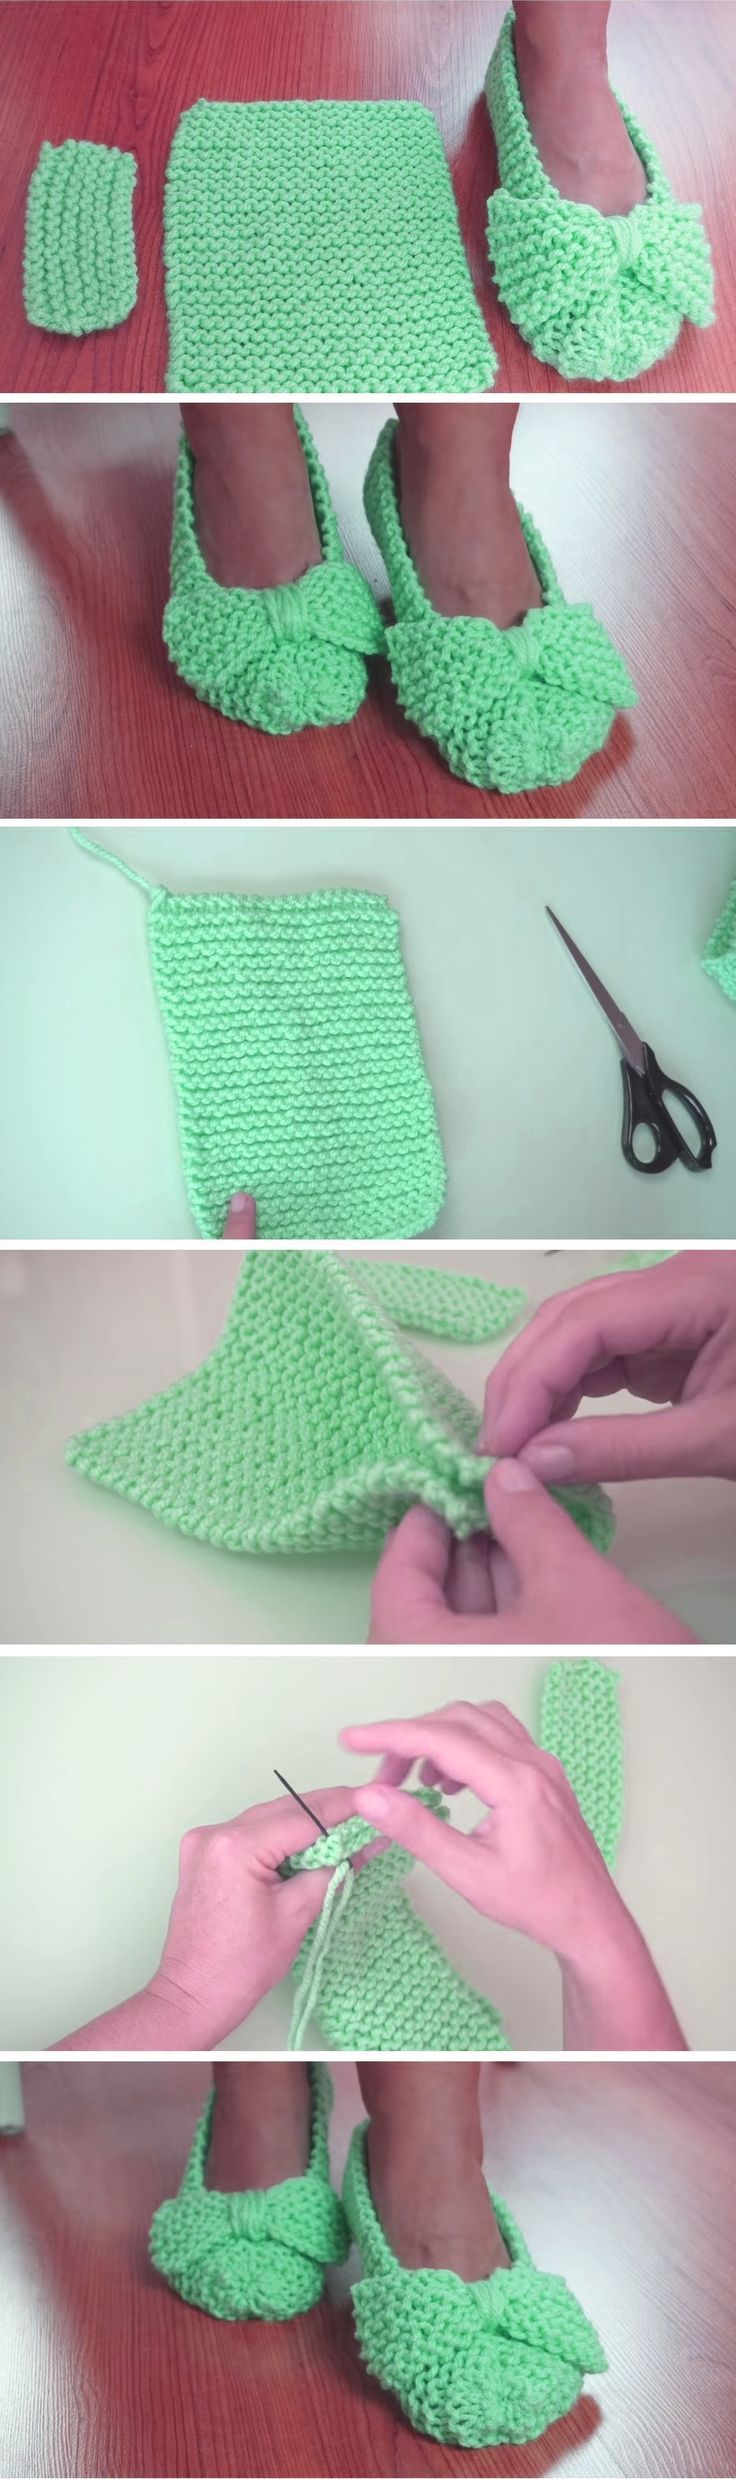 1576157123_249_Easiest-Slippers-to-Make-–-Crochet-or-Knit.jpg